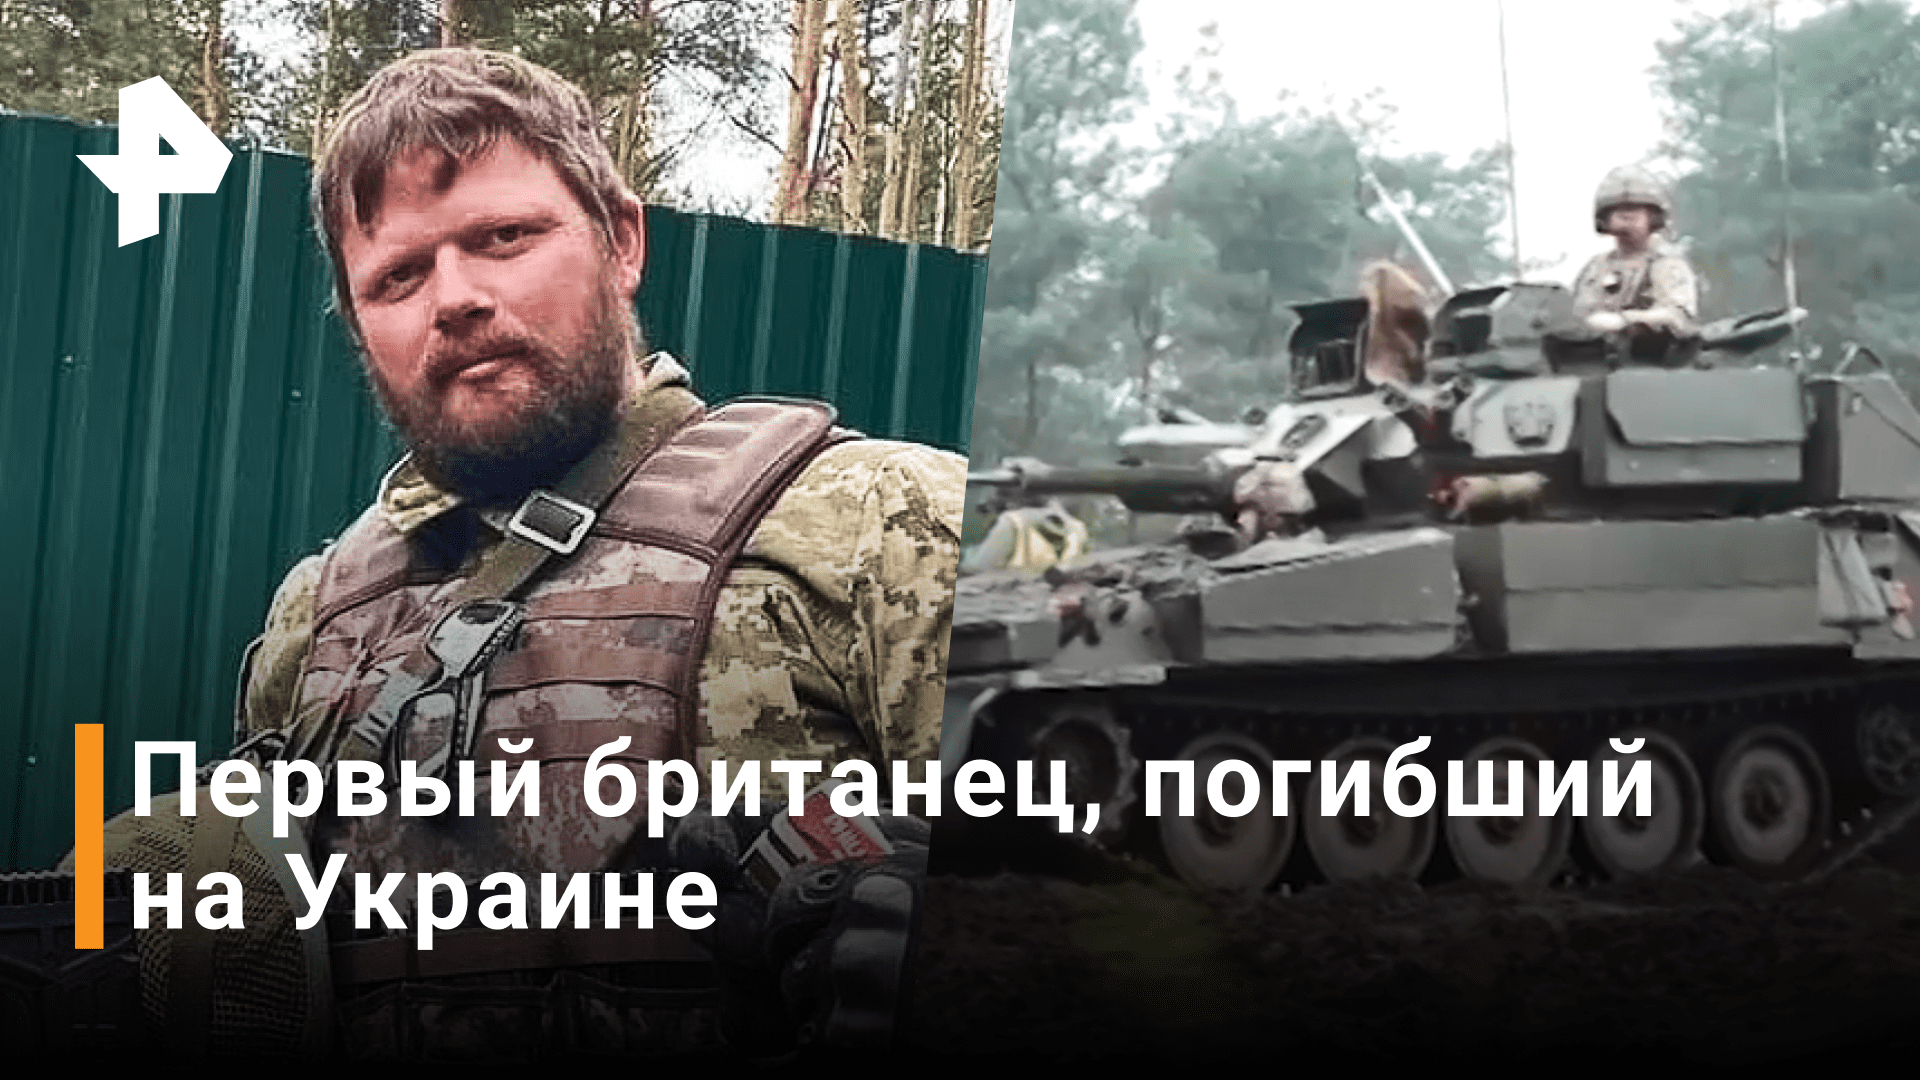 В Британии признали гибель наемника на Украине / РЕН Новости